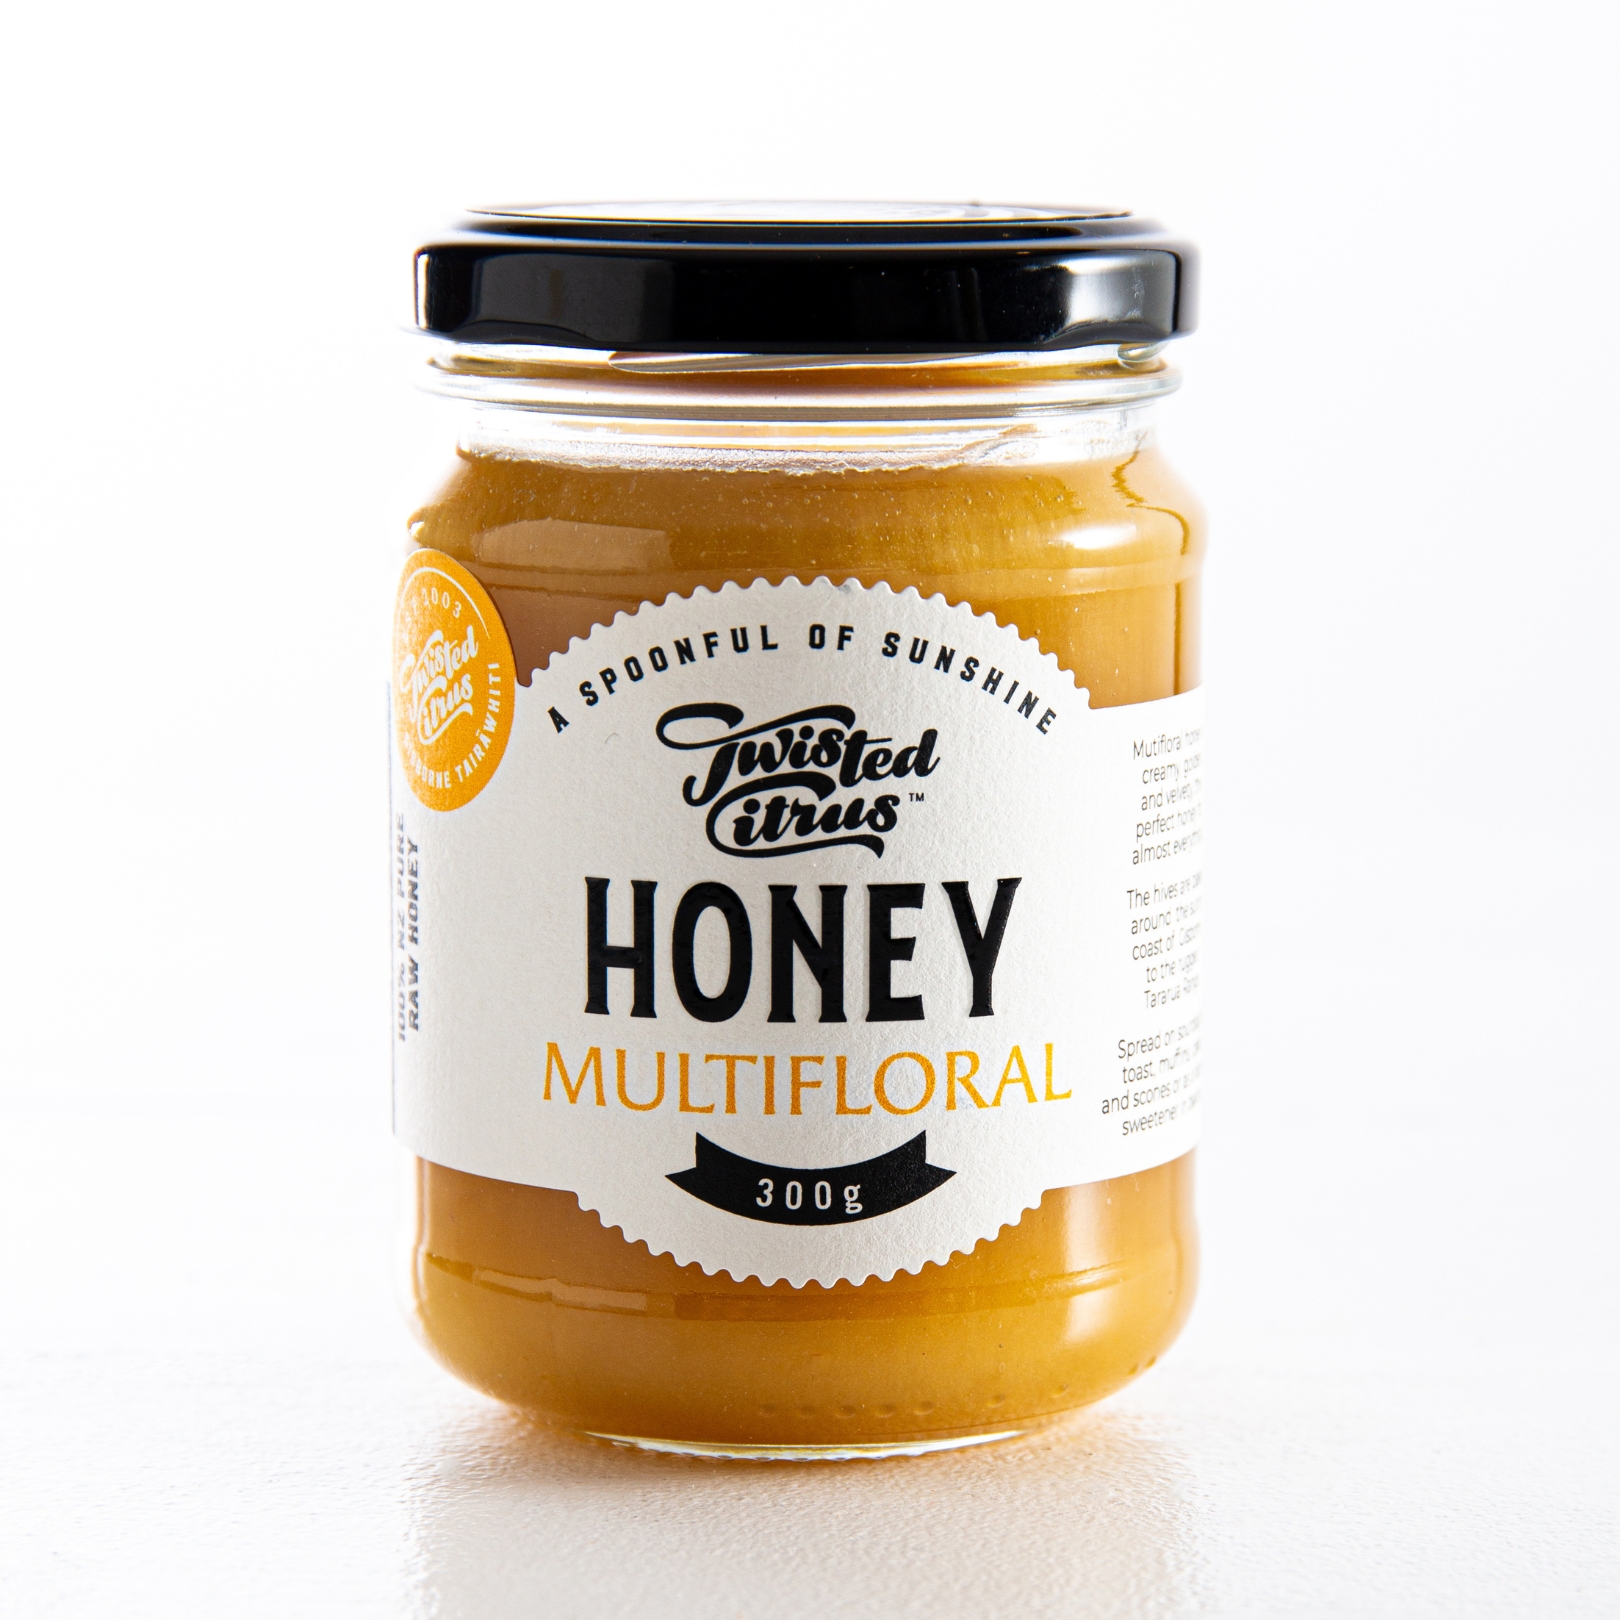 Buy Multifloral Honey Online NZ